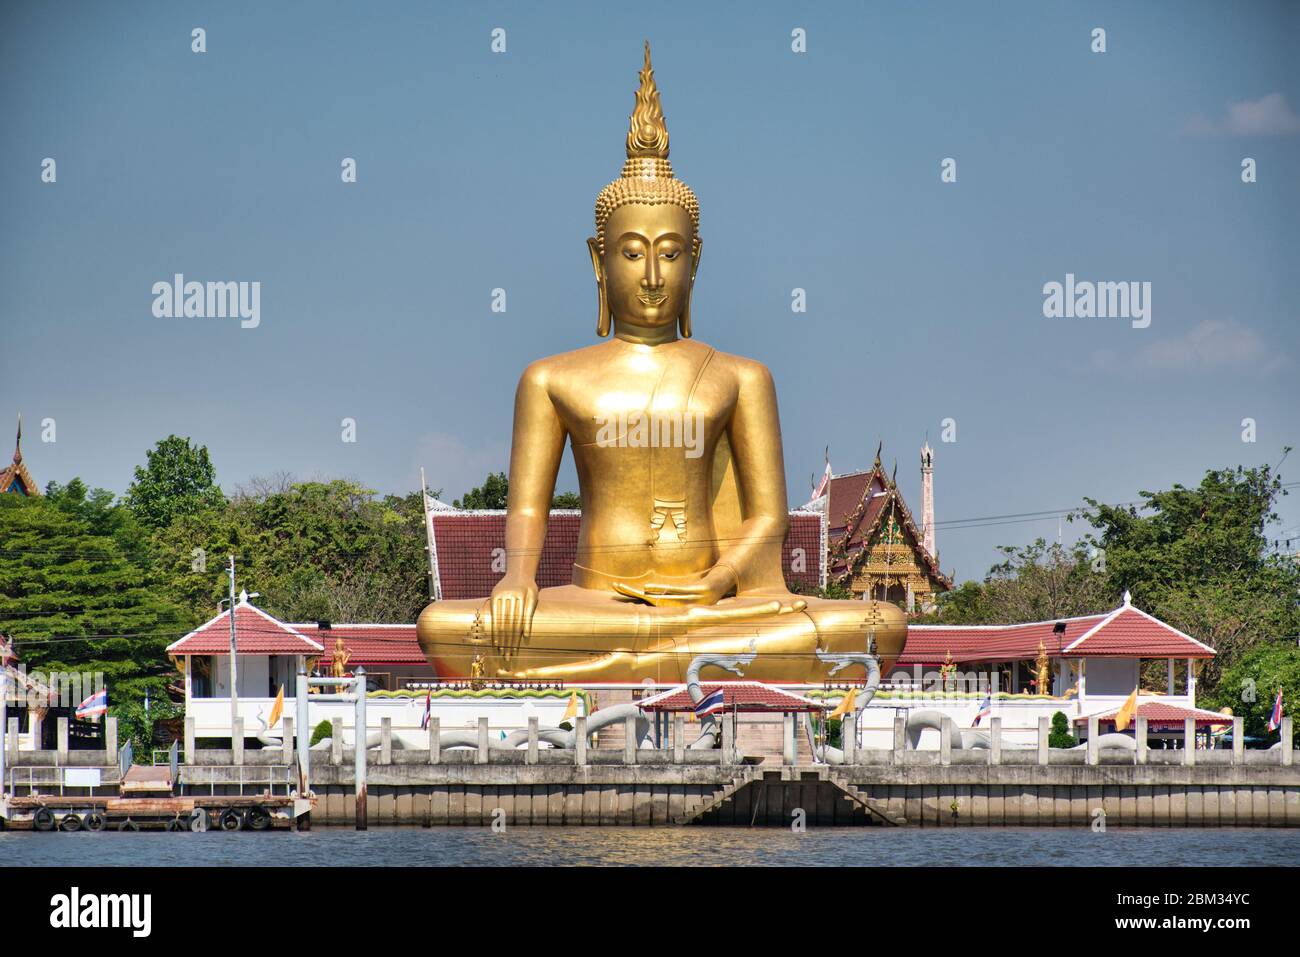 Un Buda dorado gigante en la actitud de Maravijaya es una actitud de Buda en el arte tailandés de la cual el Buda sentado está poniendo su mano en la postura de relajación Foto de stock